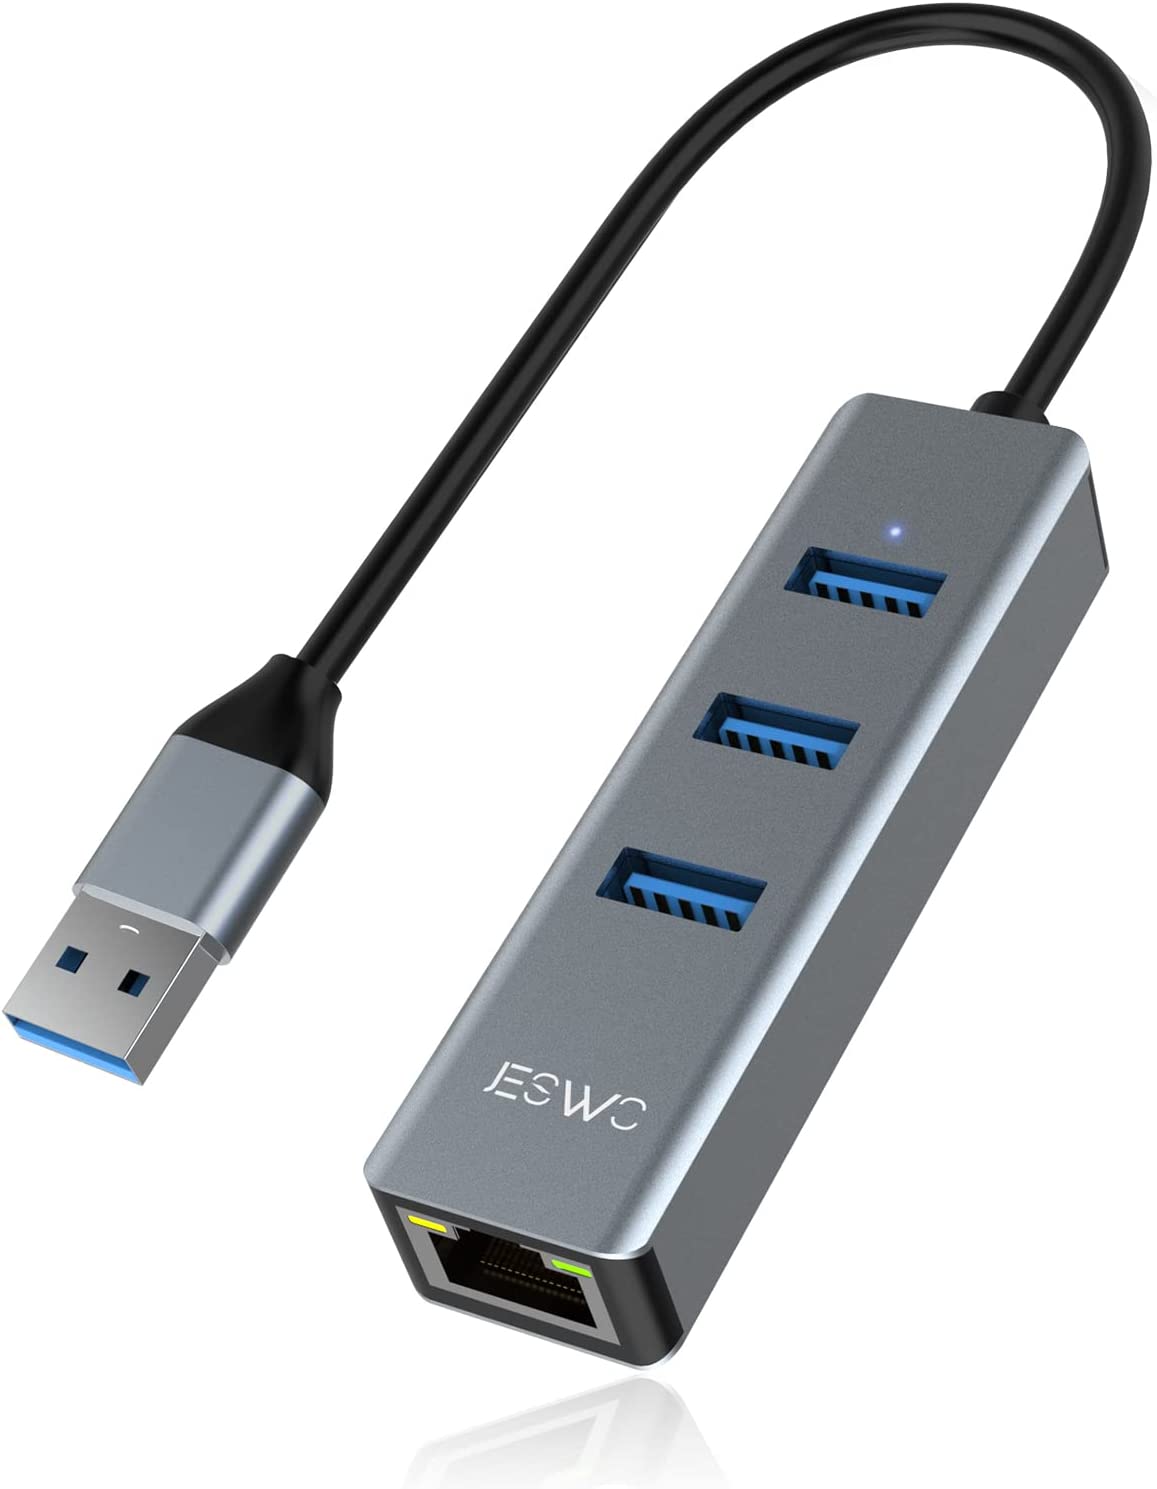 即納 有線LANアダプター USB3.0対応 USBポート 3ポート スペースグレー 有線 Switch対応 LAN 変換 アダプター パソコン/Mac/Windows